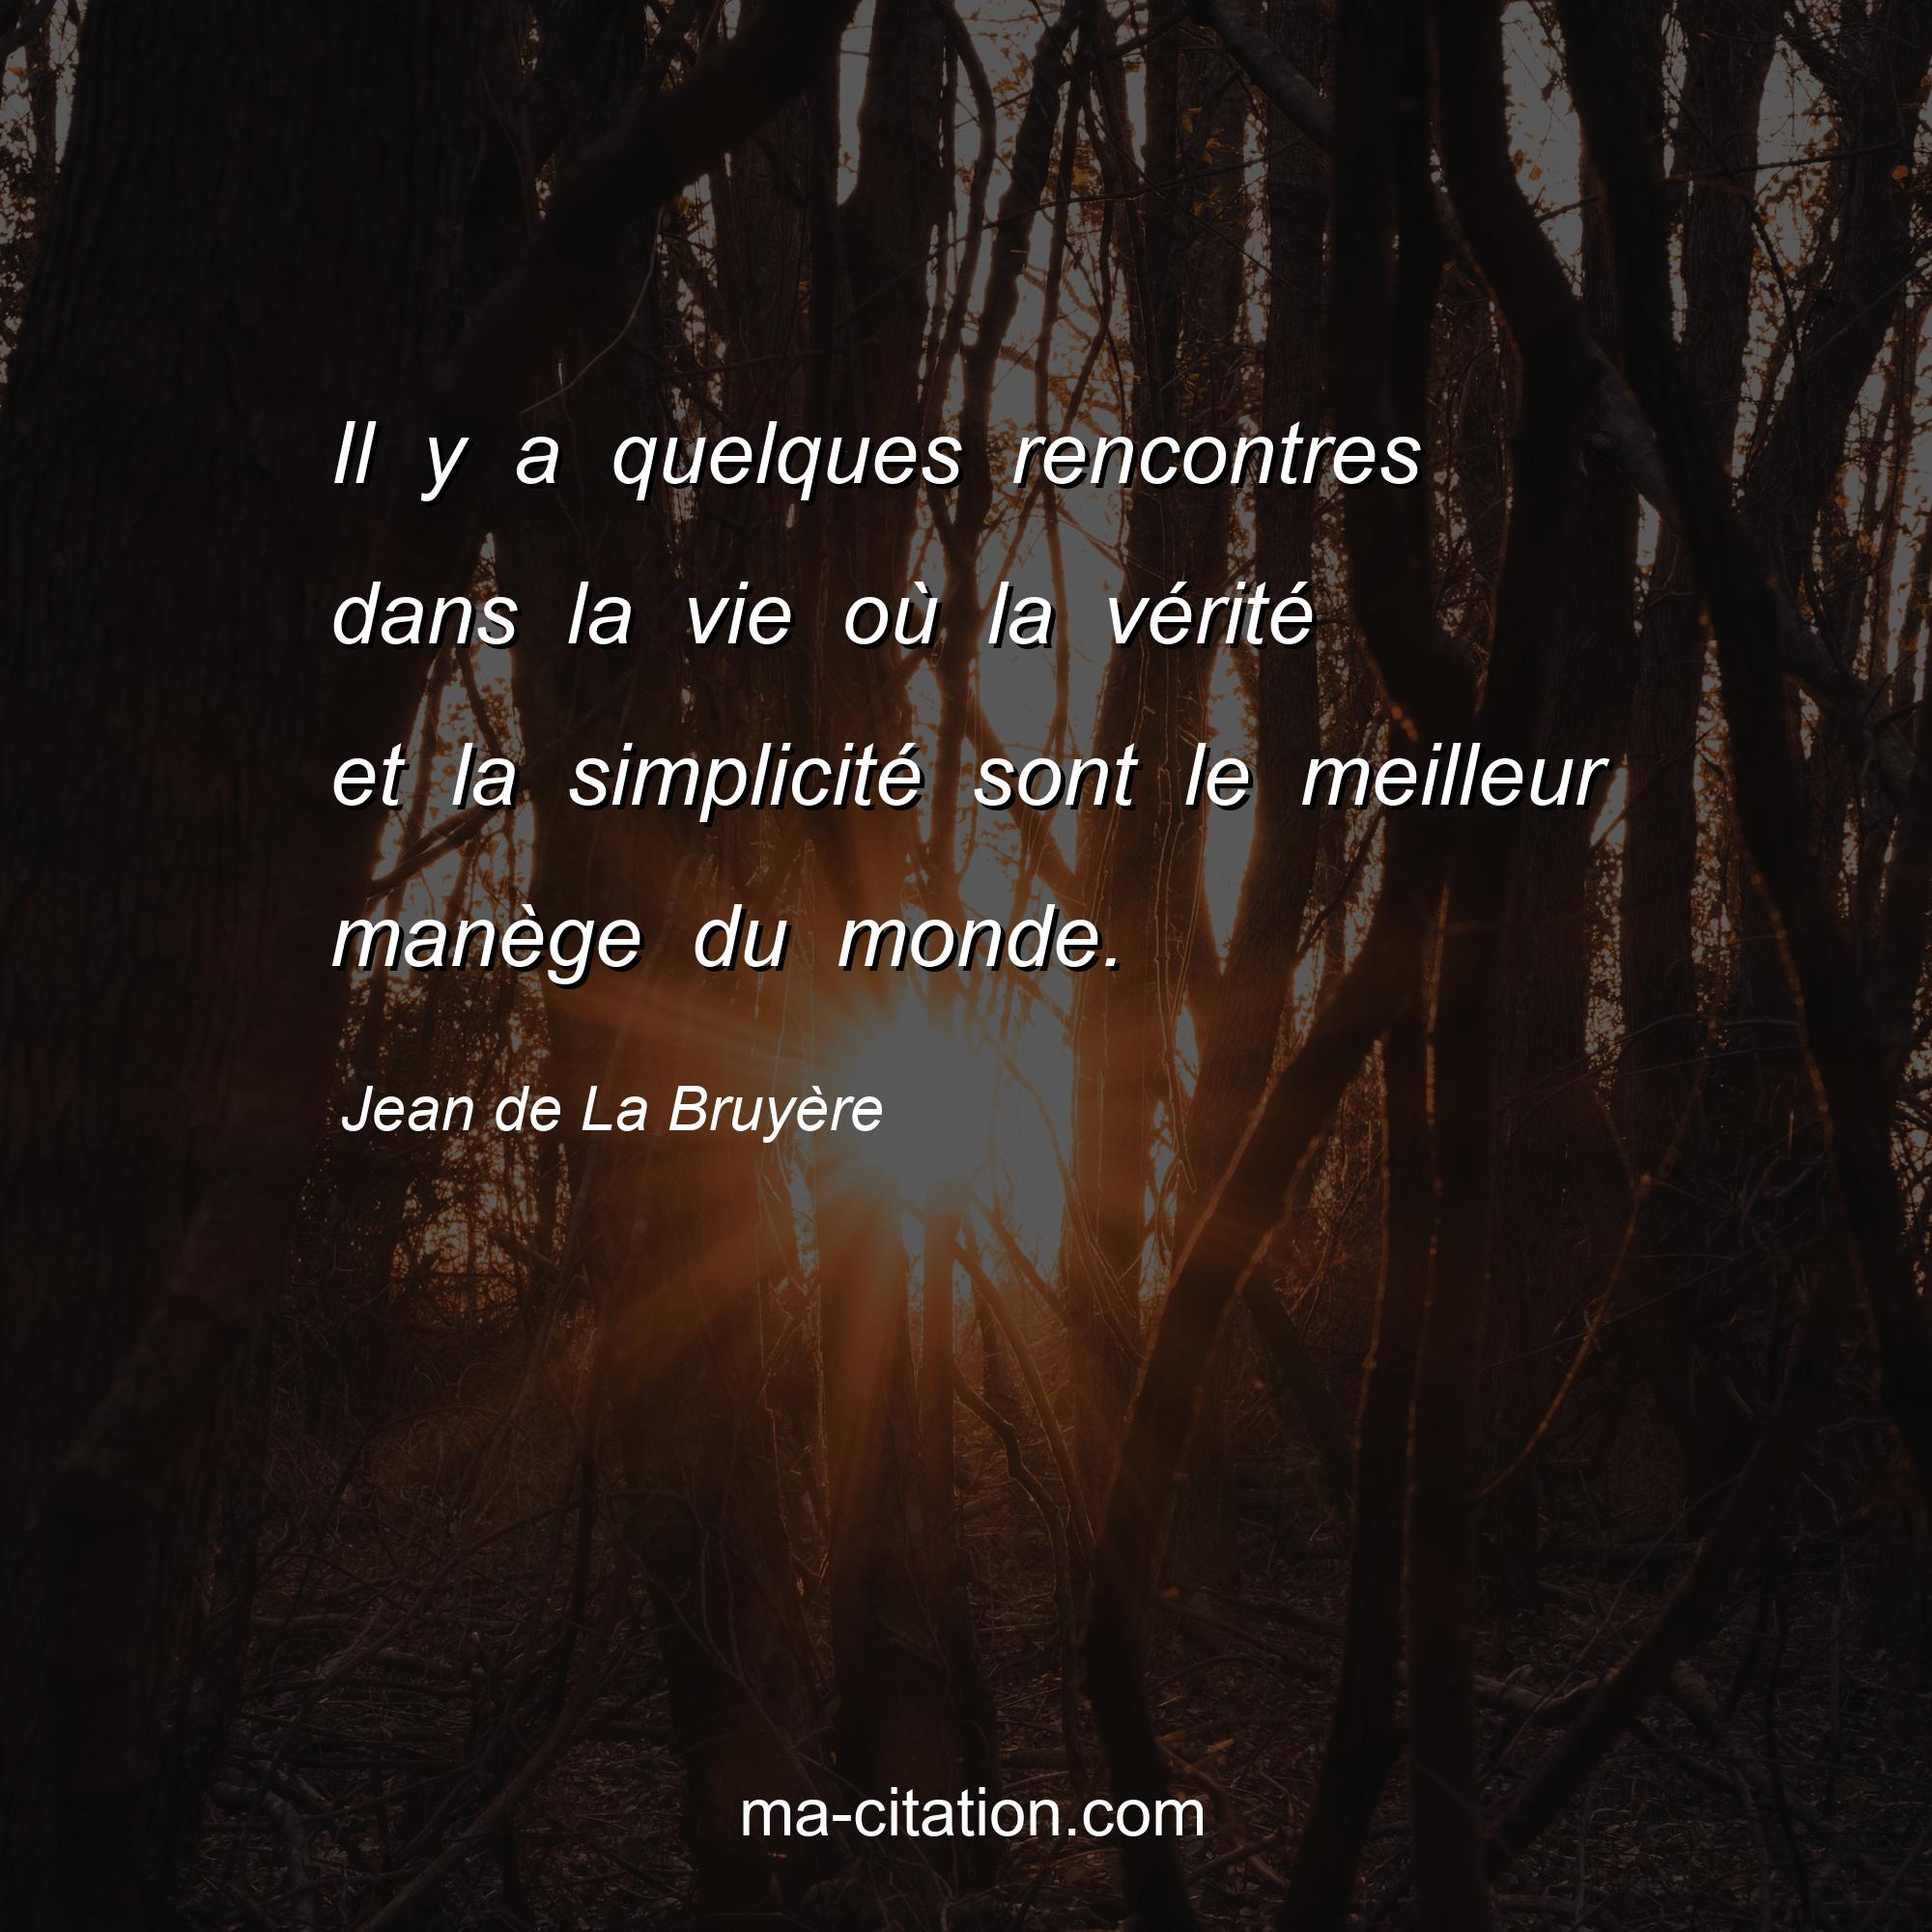 Jean de La Bruyère : Il y a quelques rencontres dans la vie où la vérité et la simplicité sont le meilleur manège du monde.